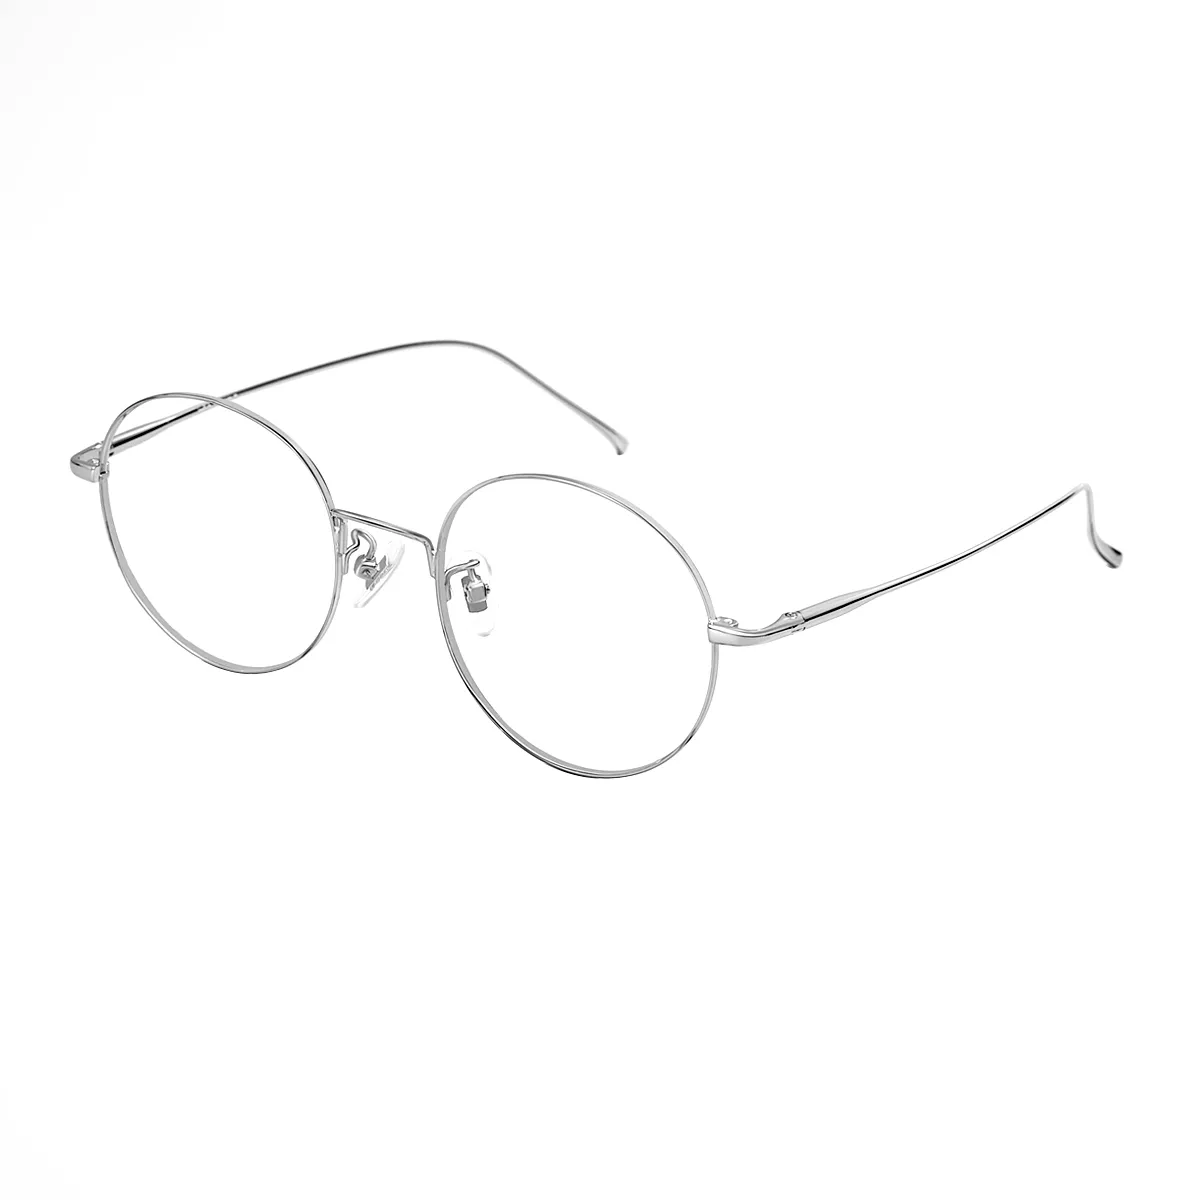 Renata - Round Silver Glasses for Women